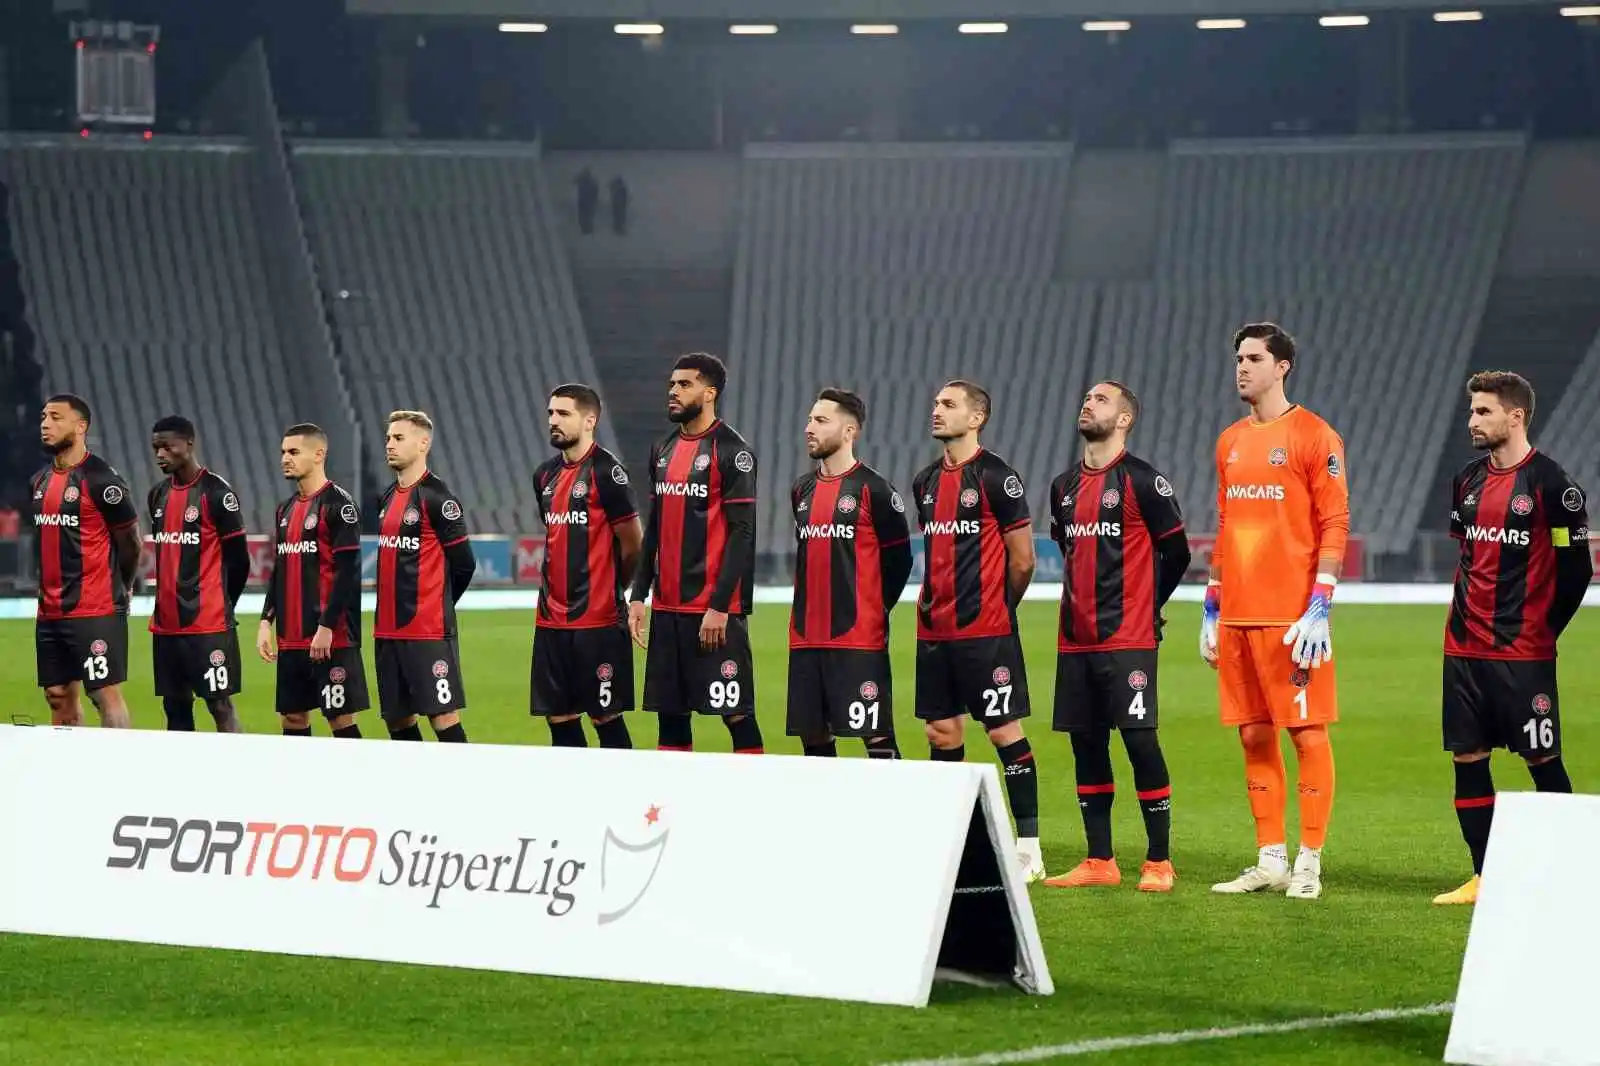 Spor Toto Süper Lig: Fatih Karagümrük: 0 - Beşiktaş: 0 (Maç devam ediyor)
